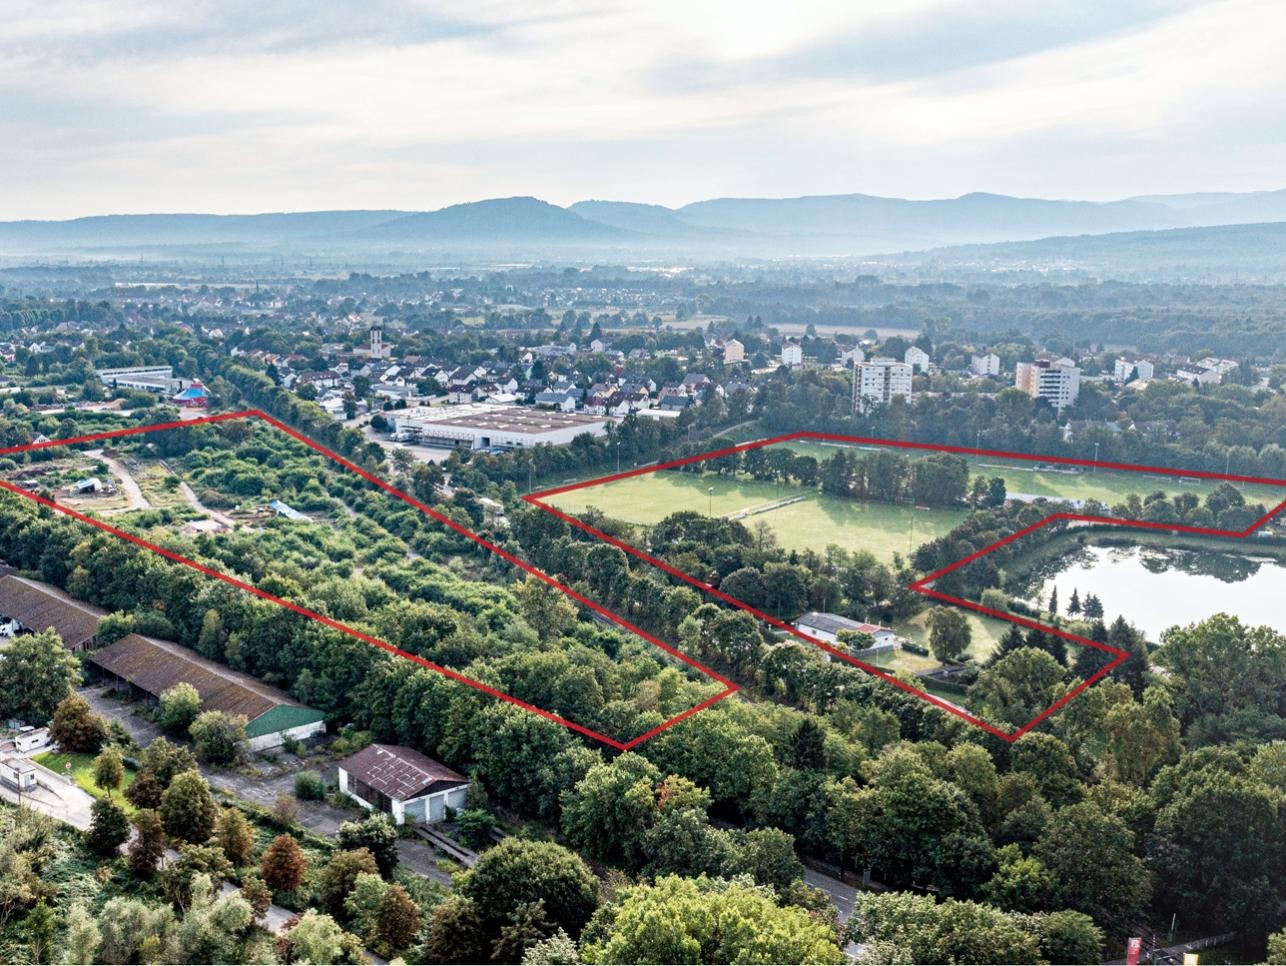 La nouvelle clinique centrale doit être construite sur l'actuel terrain de sport au bord du lac de Münchfeld.